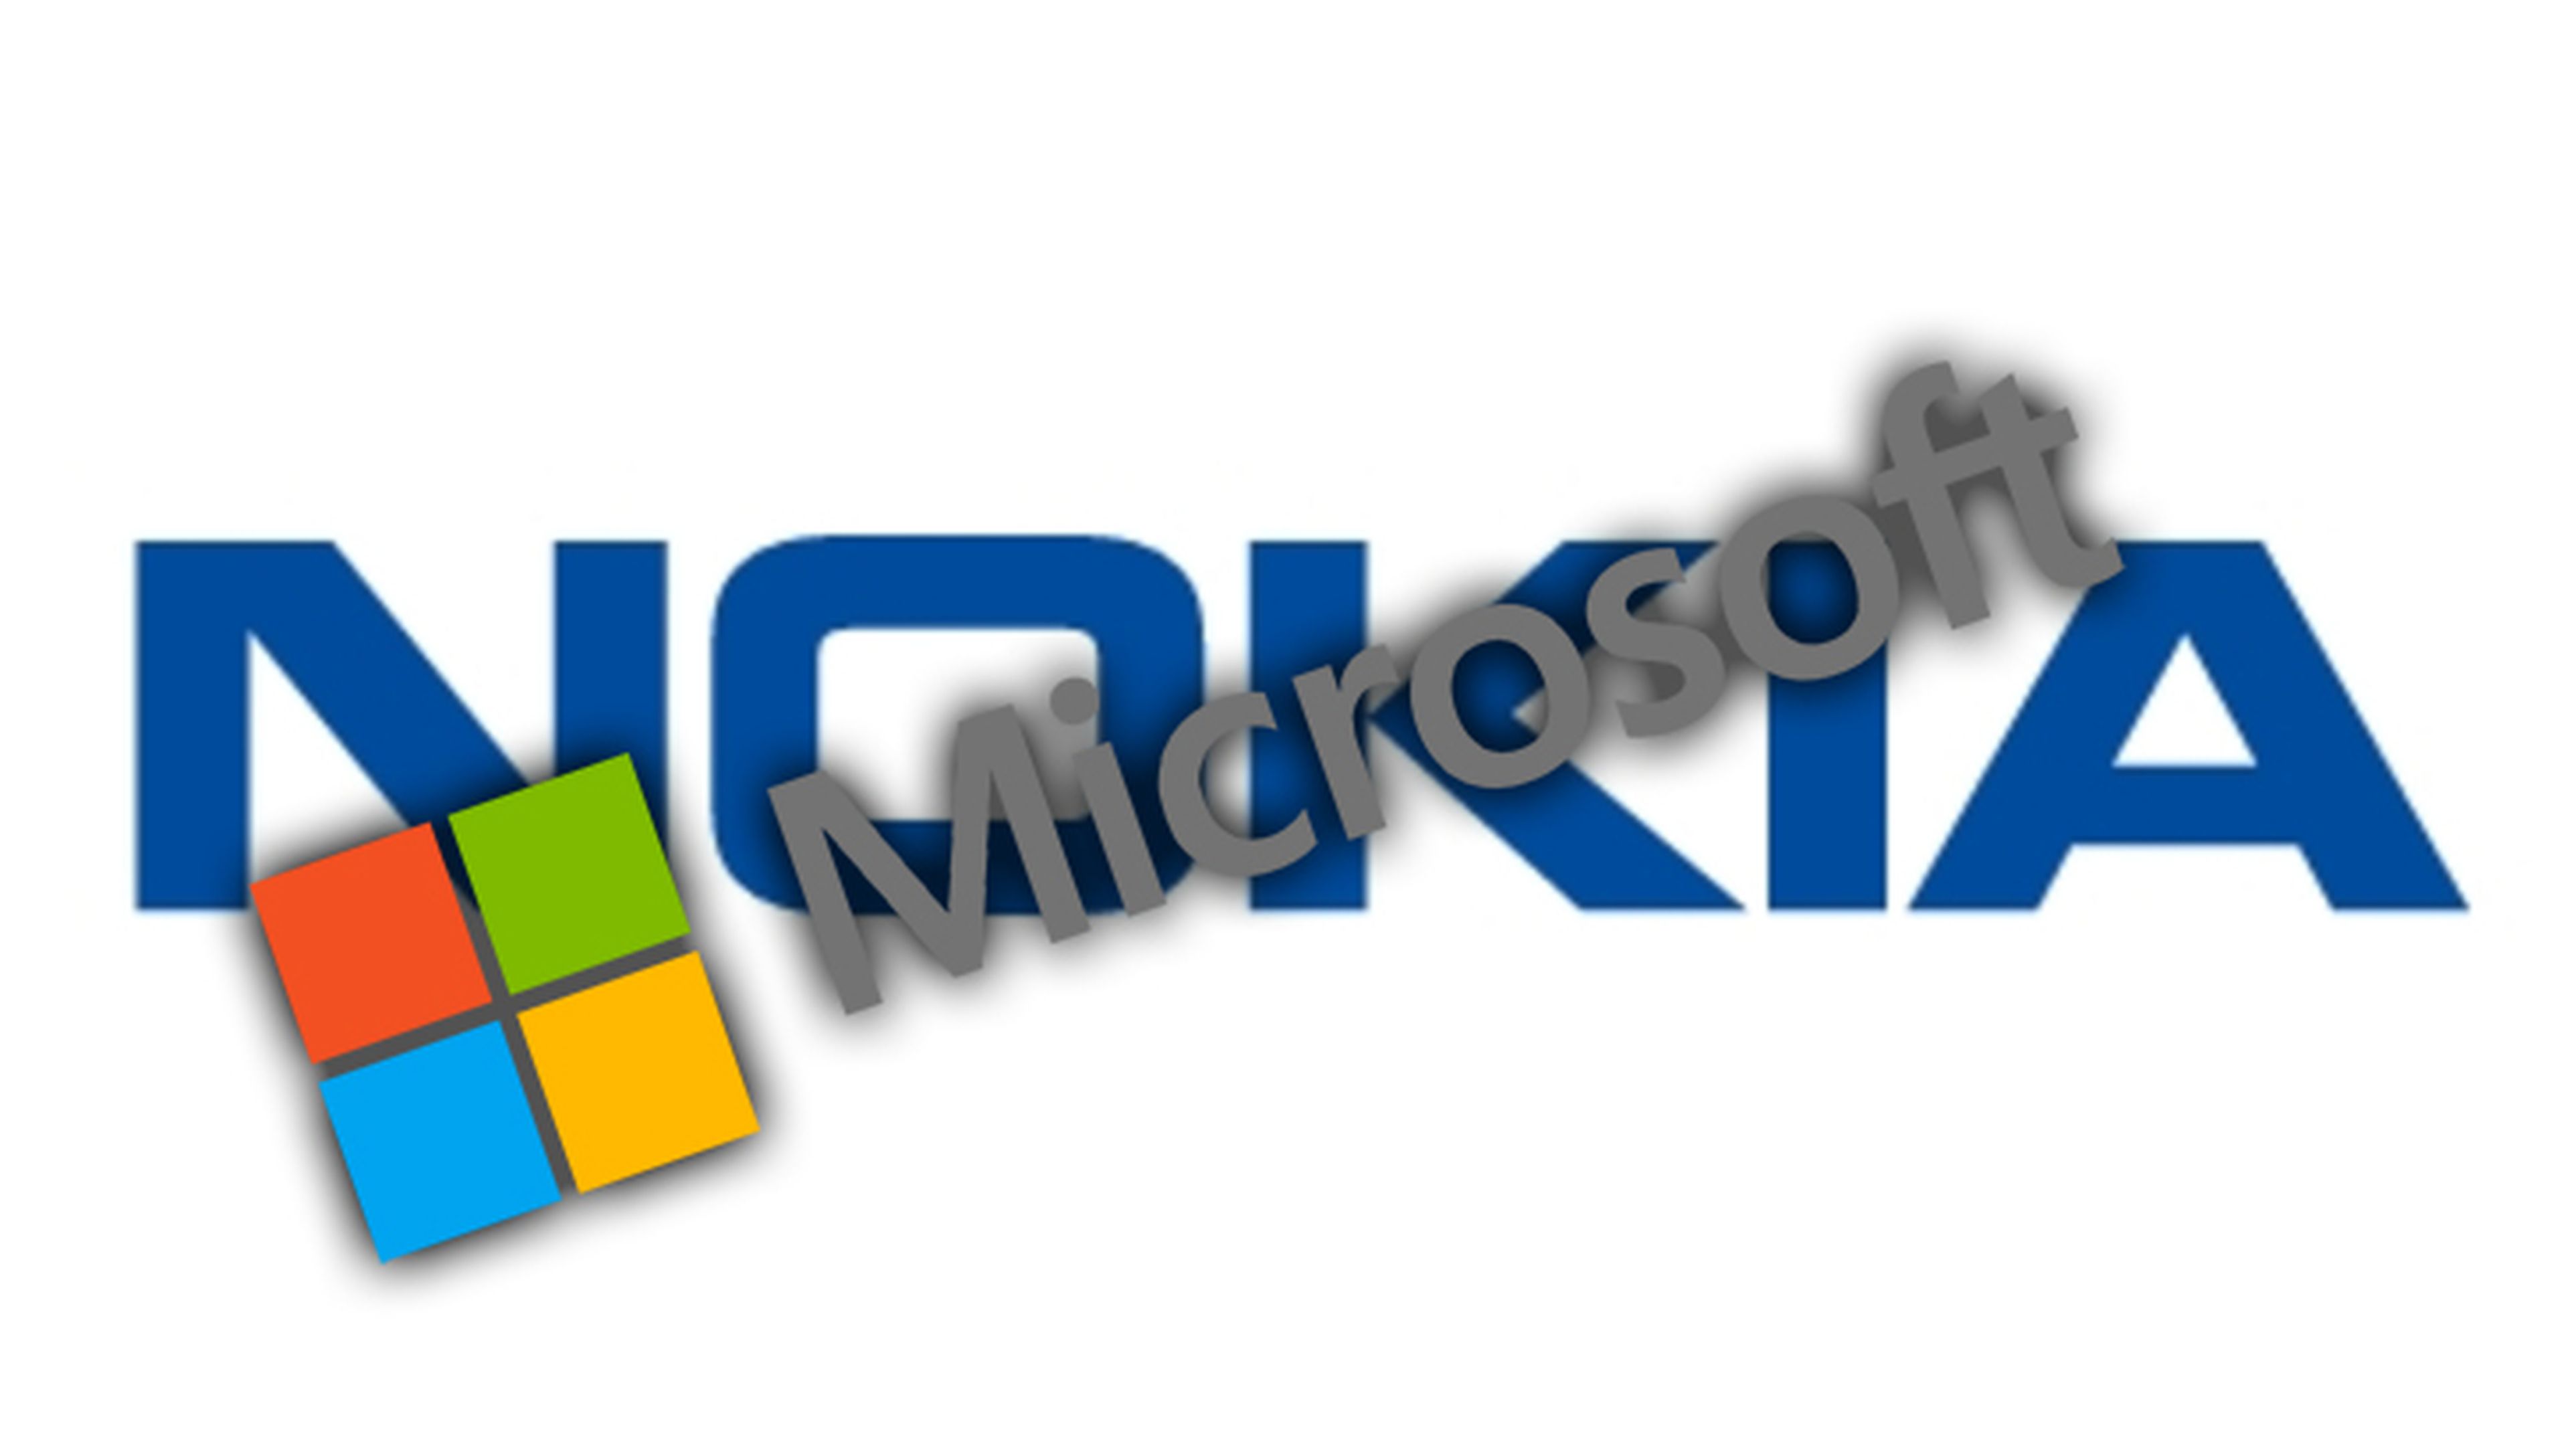 Microsoft estuvo MUY cerca de comprar Nokia. ¿qué pasó?